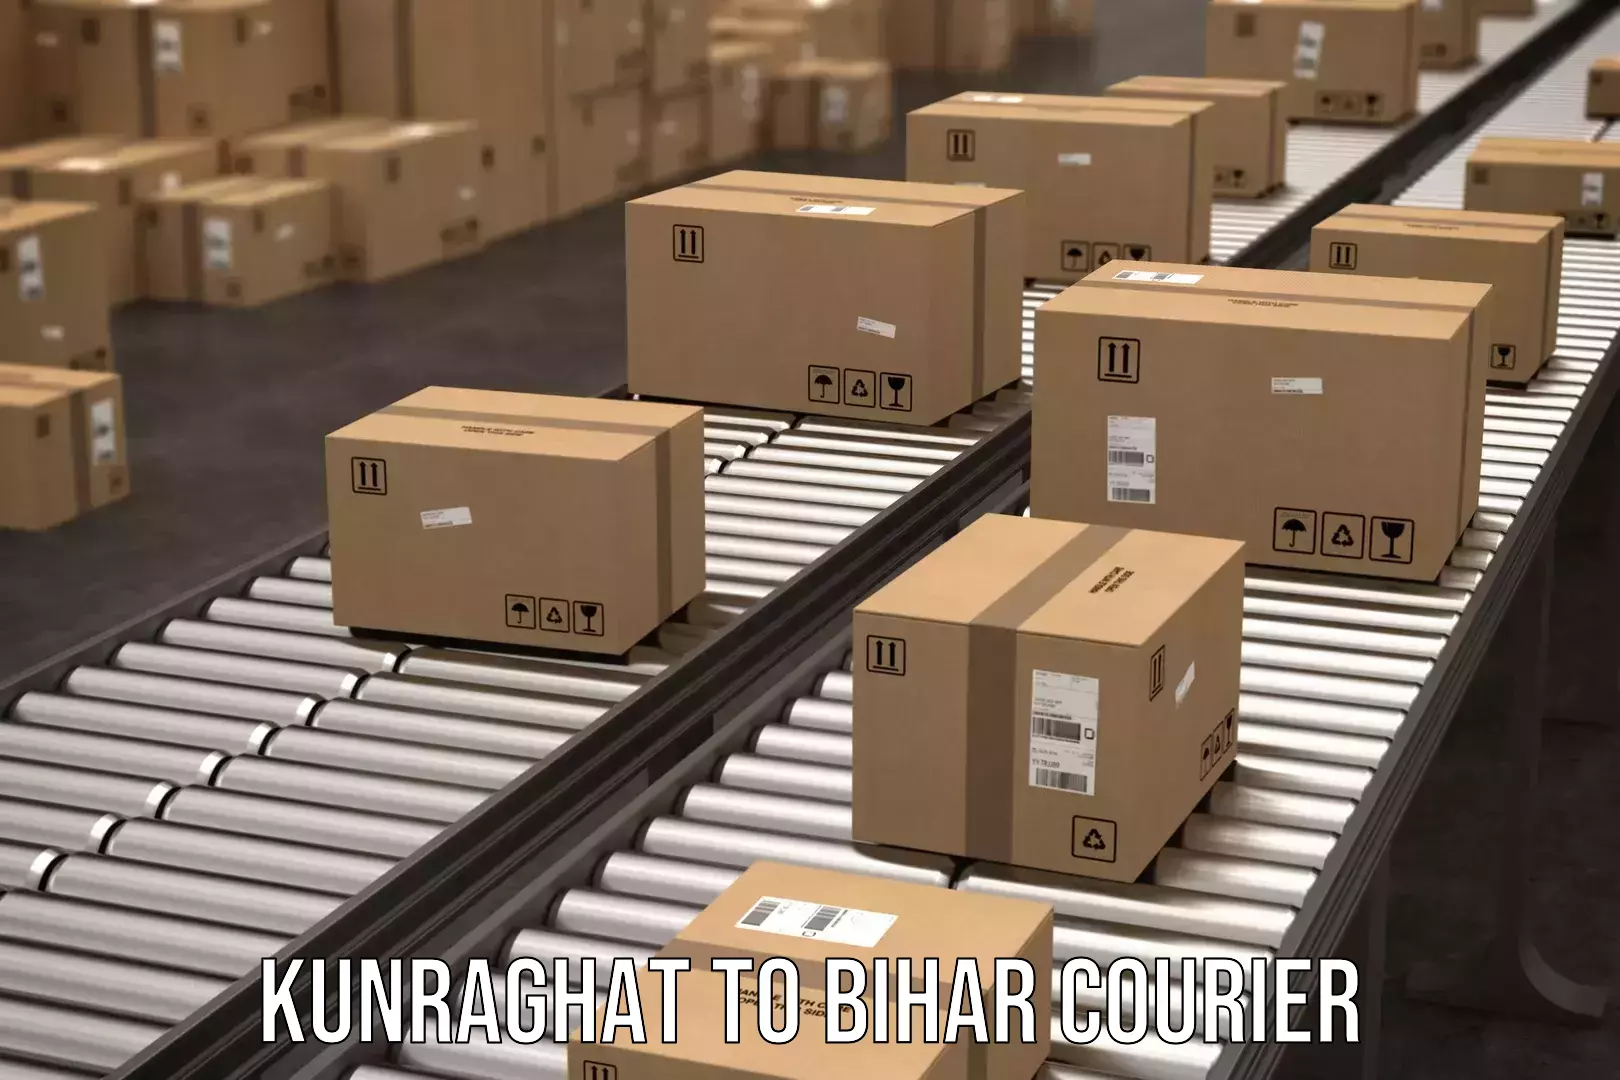 Global shipping networks Kunraghat to Dhaka